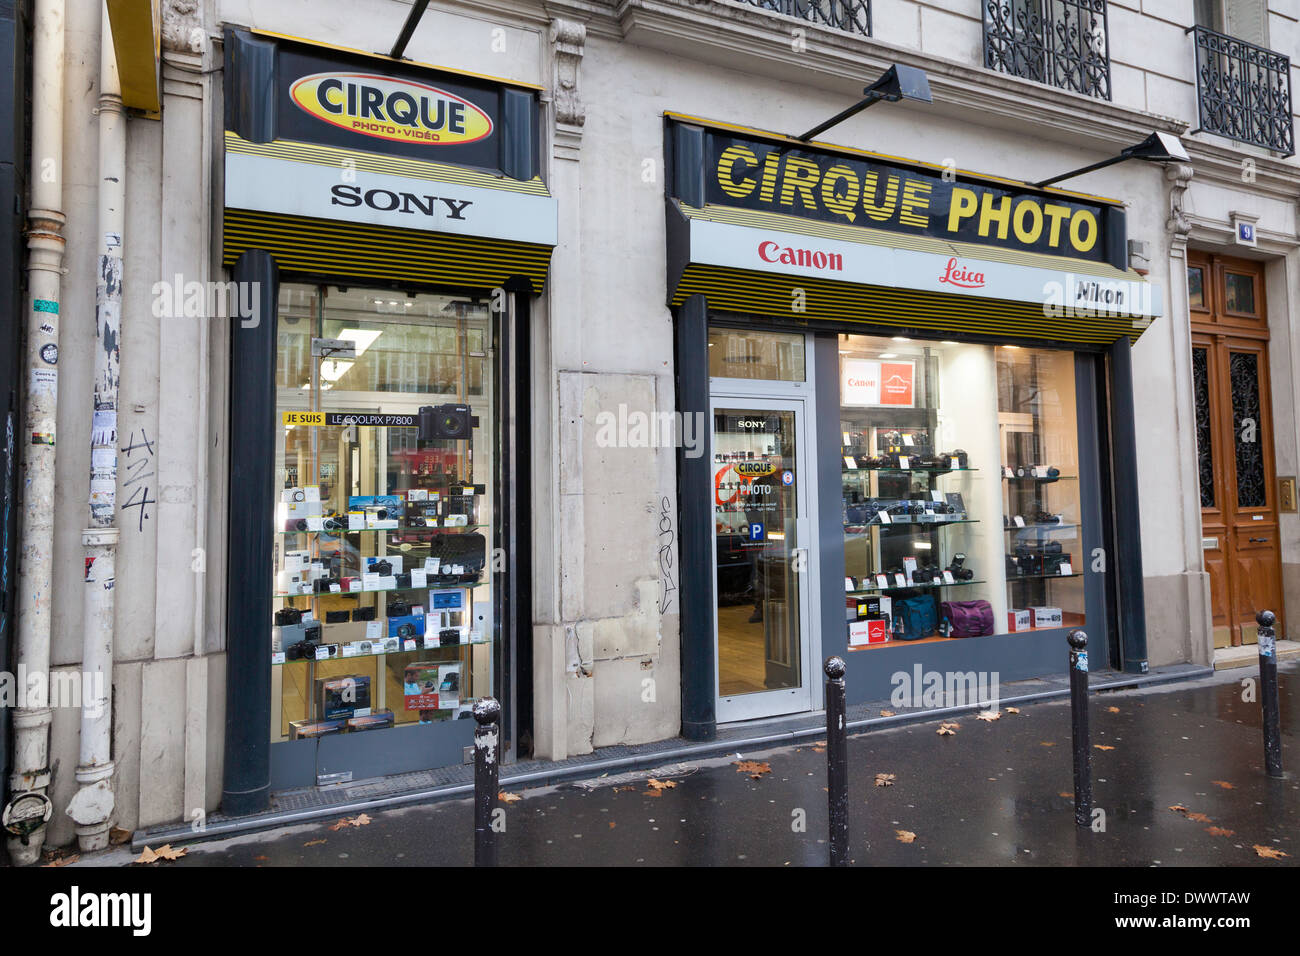 Cirque Photo camera store, Boulevard Beaumarchais, Paris, France Banque D'Images